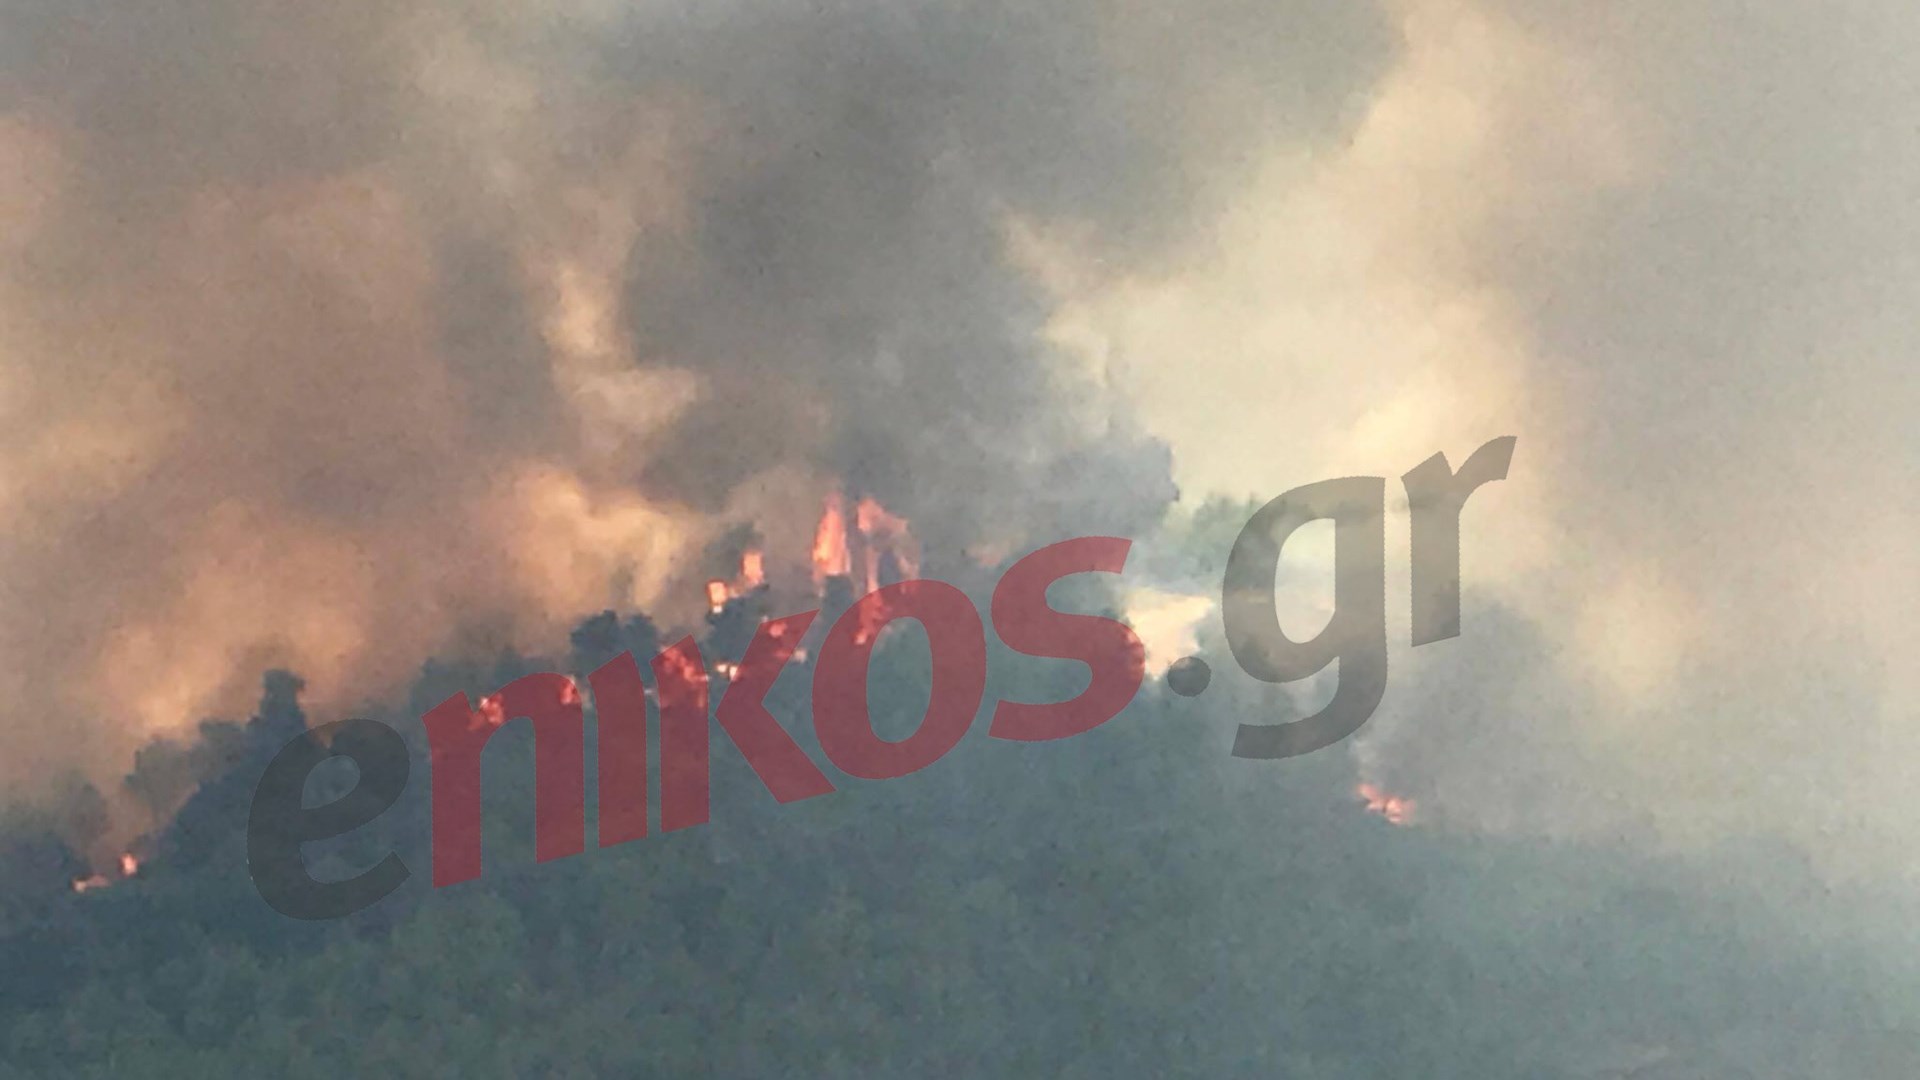 Προς το Πολυδένδρι κατευθύνεται η μεγάλη πυρκαγιά – Εκκενώθηκαν σπίτια στο Σαλαμίδι